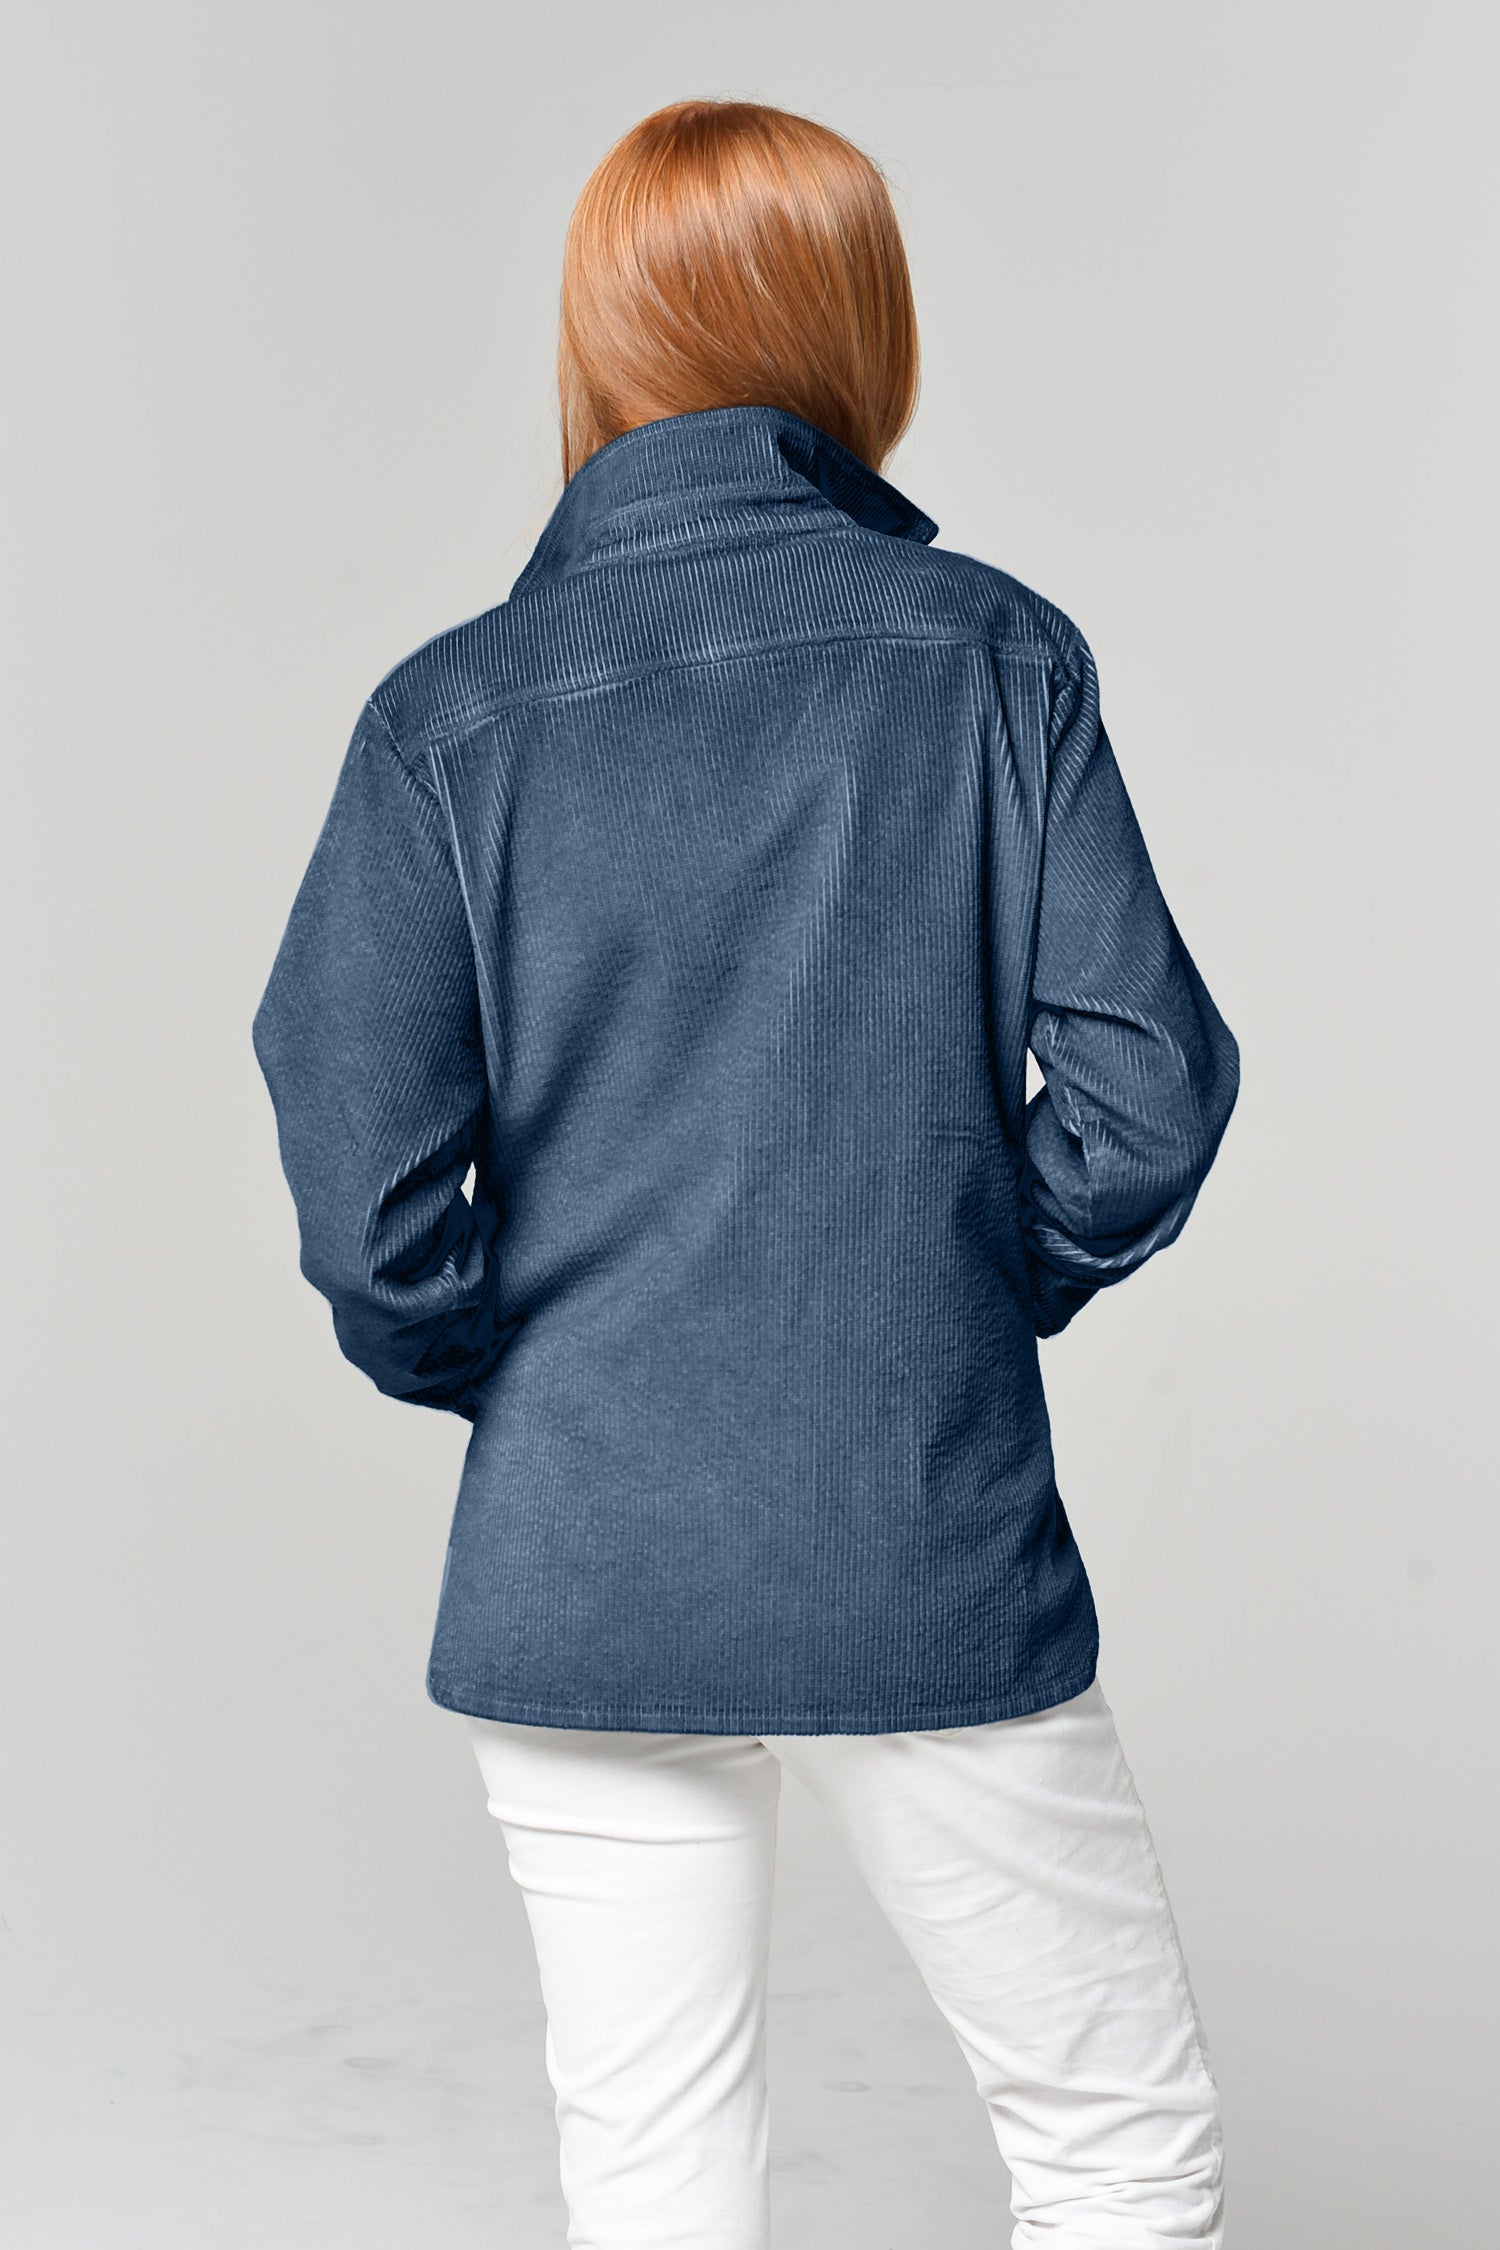 Dunian Corduroy Tracker Jacket - Jeans